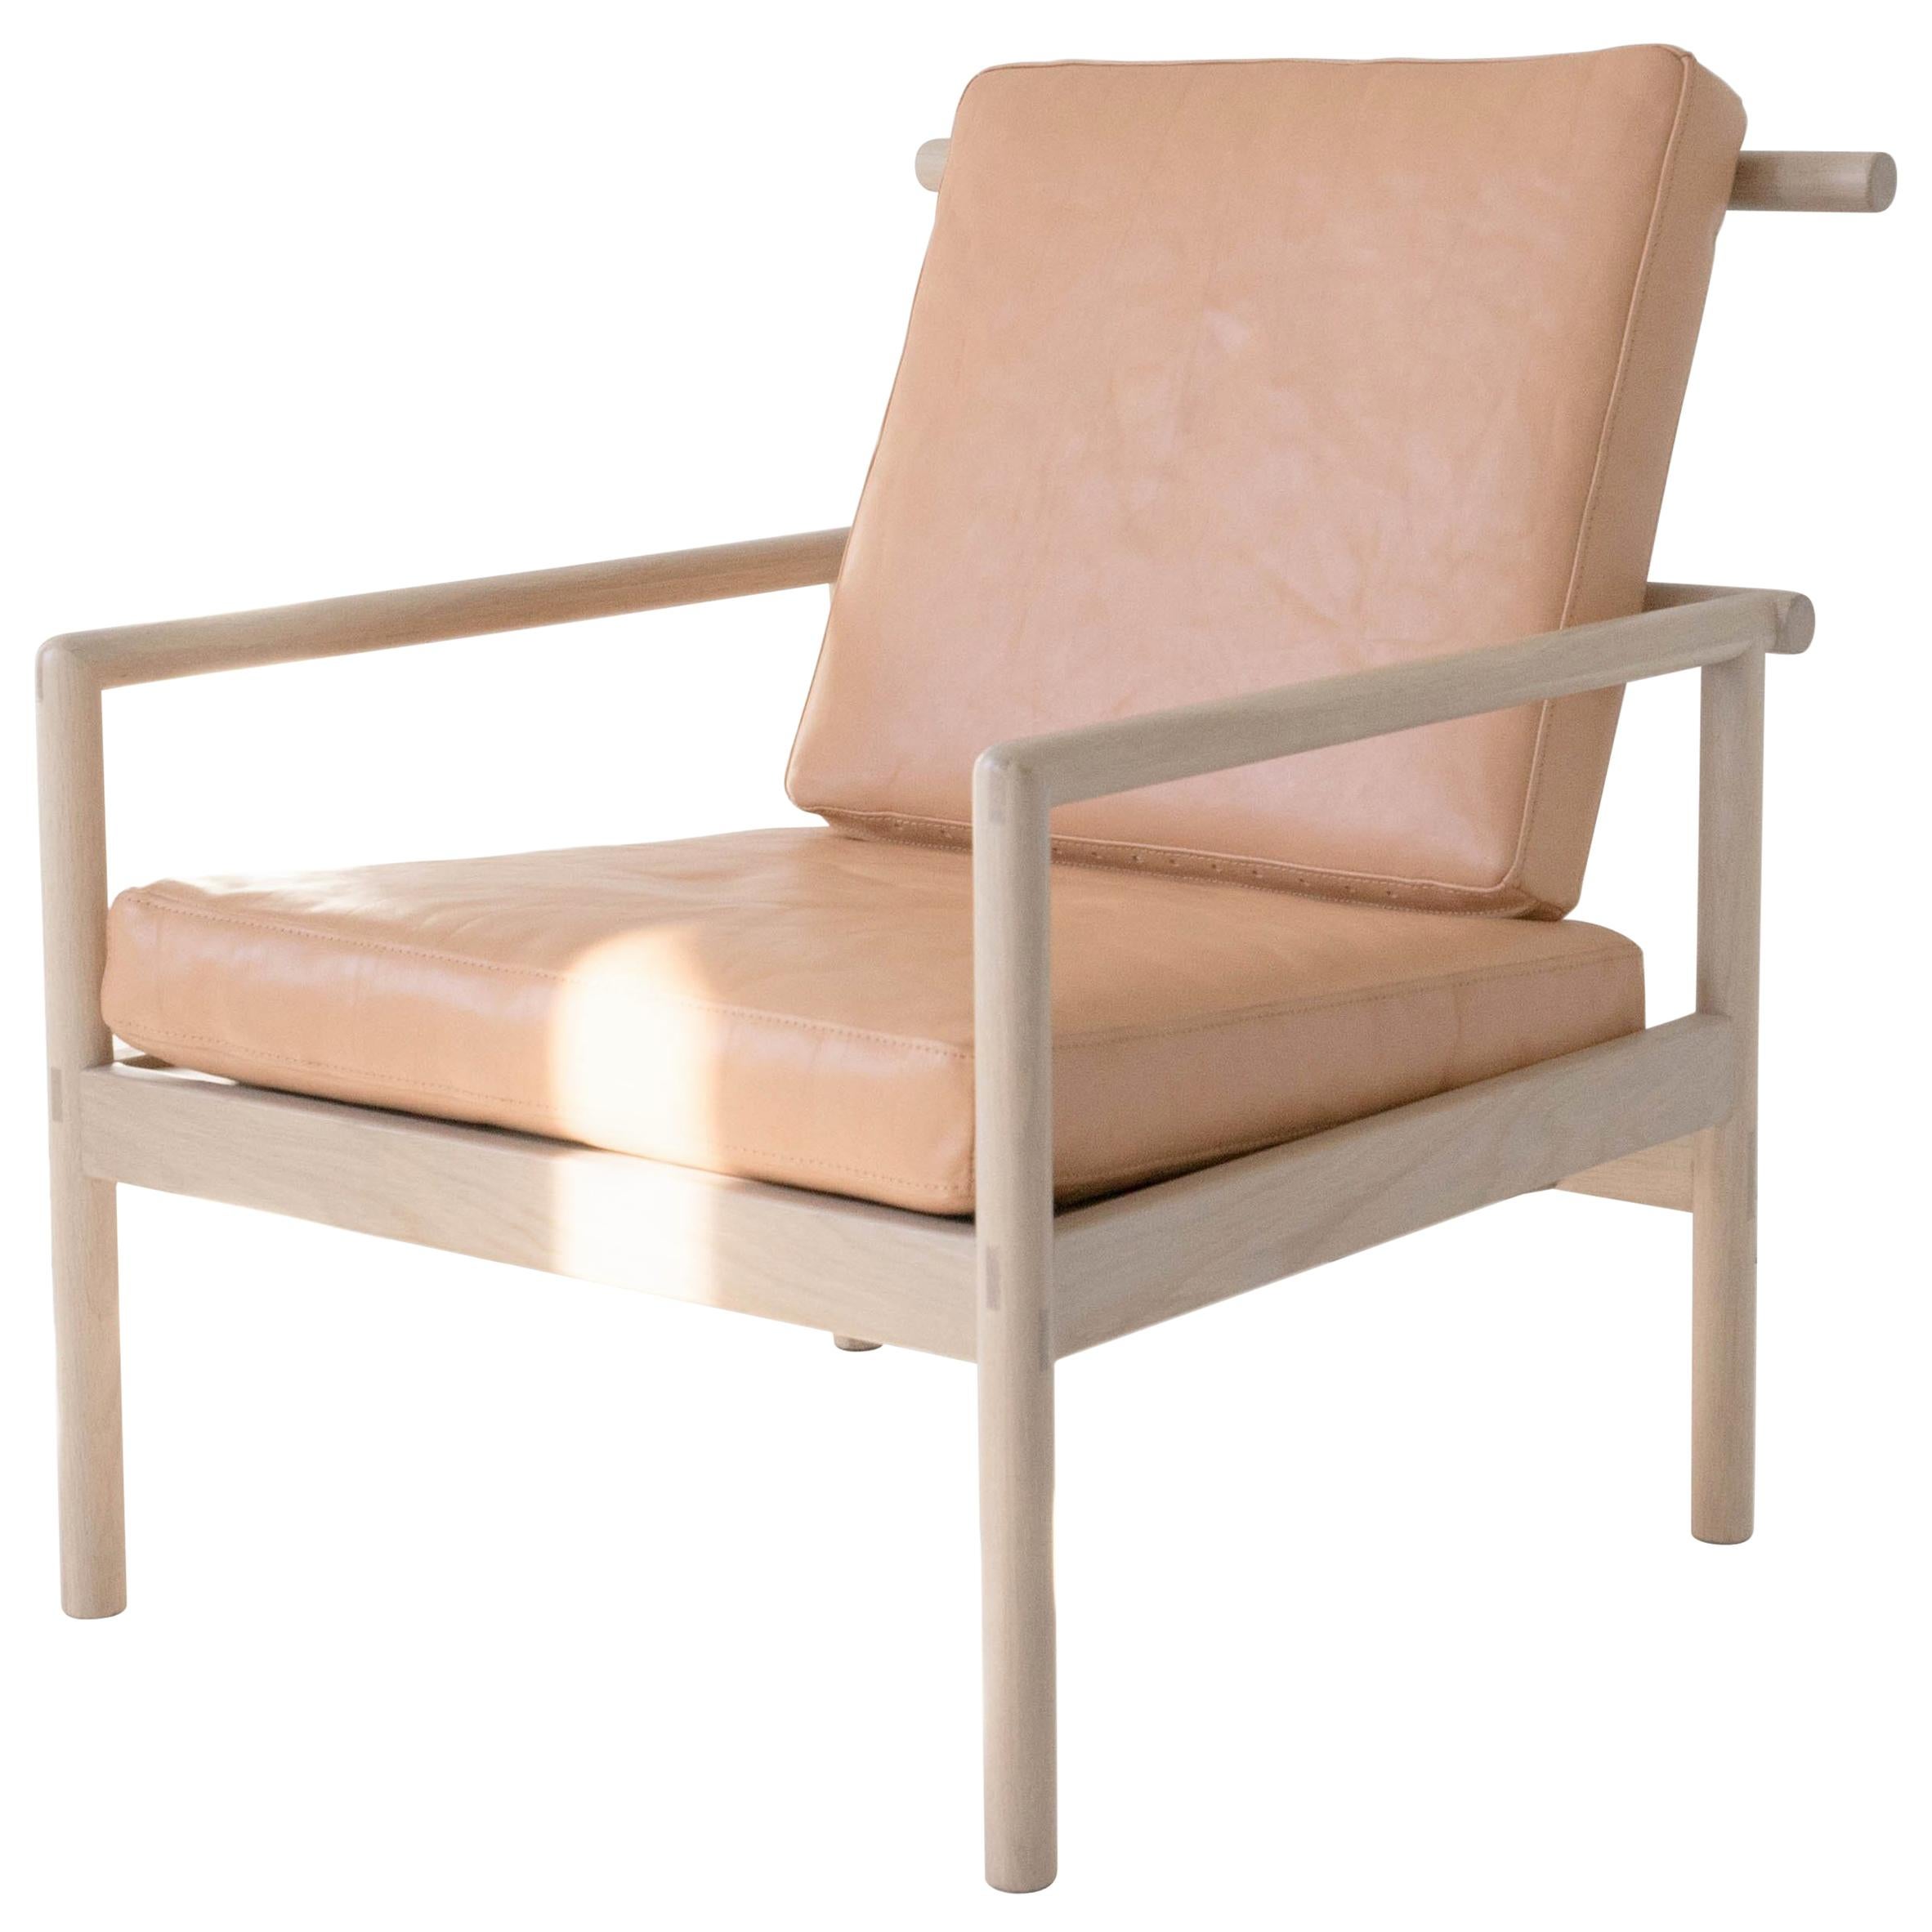 Zehn Stühle von Sun at, Nude Minimalist / Midcentury Loungesessel aus Holz, Leder